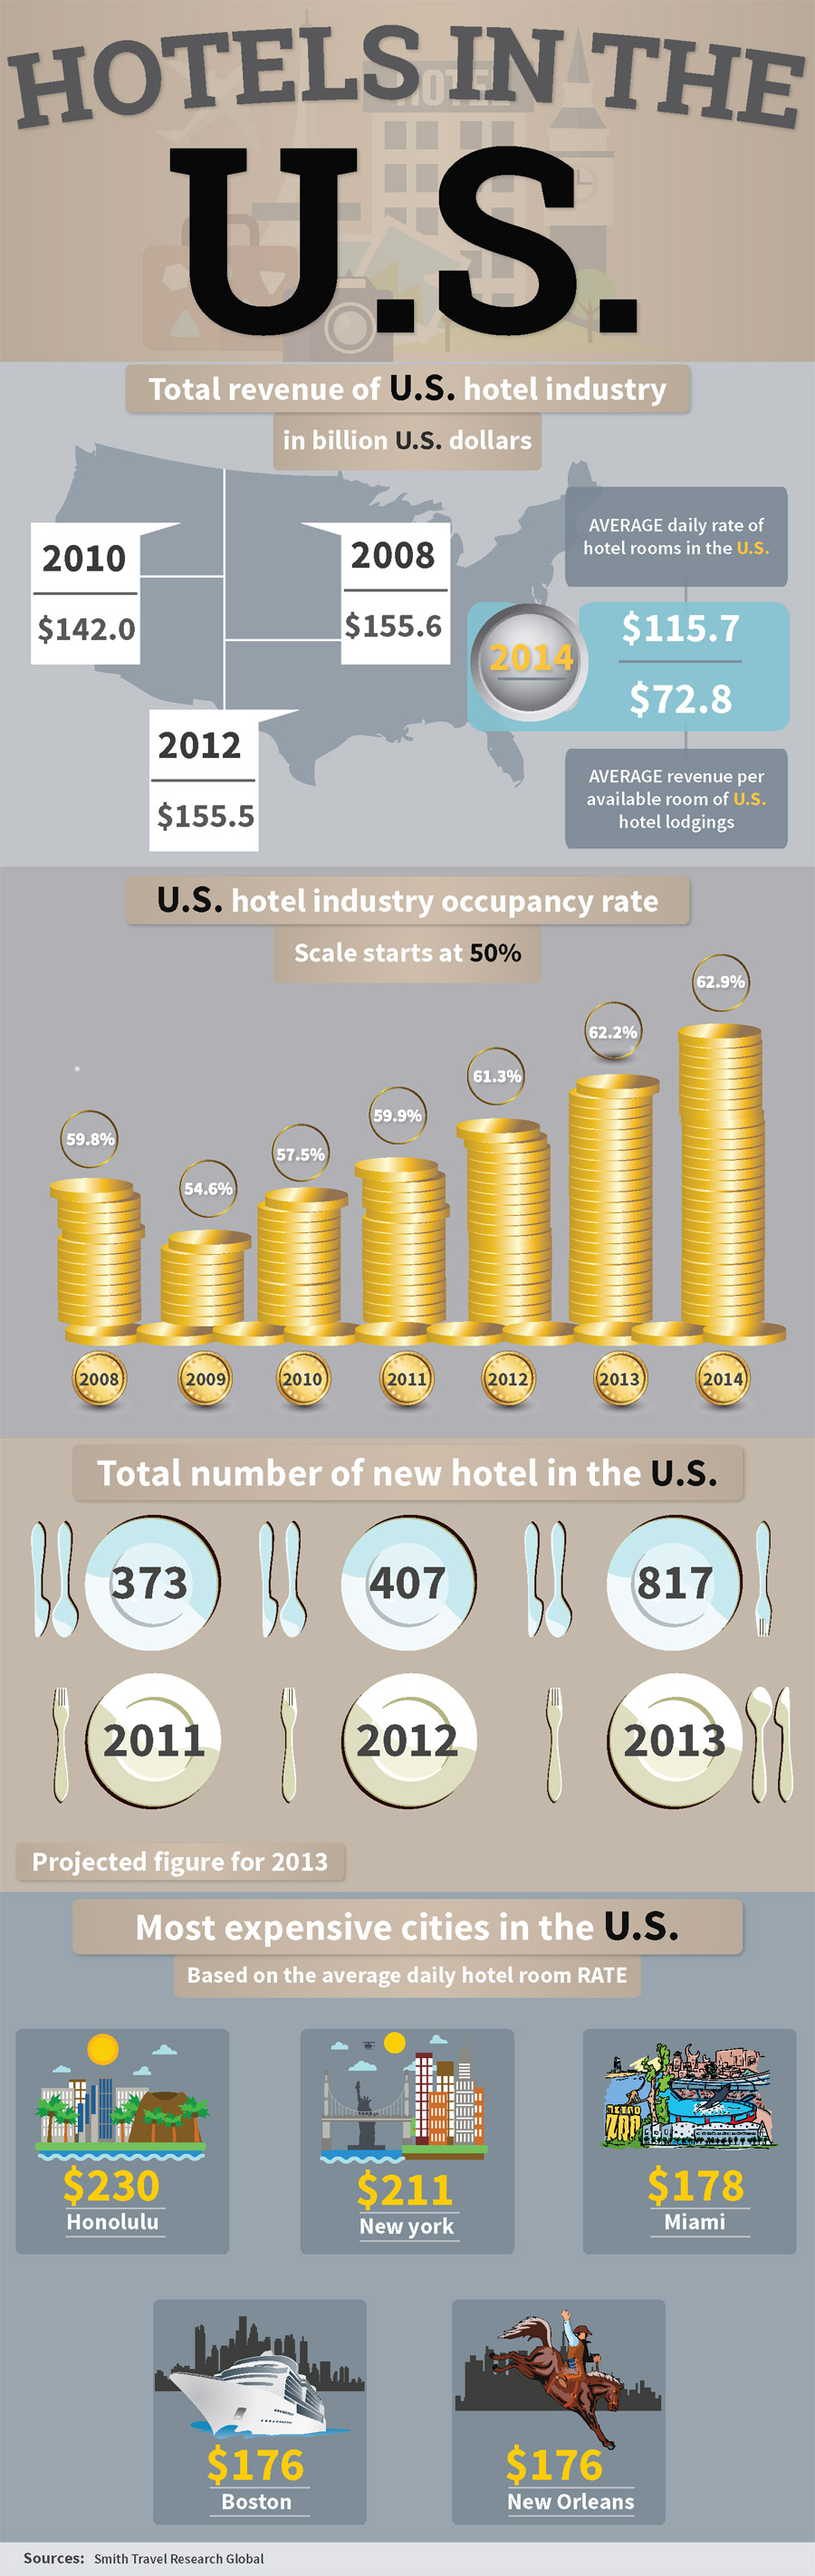 Hotels in the U.S.